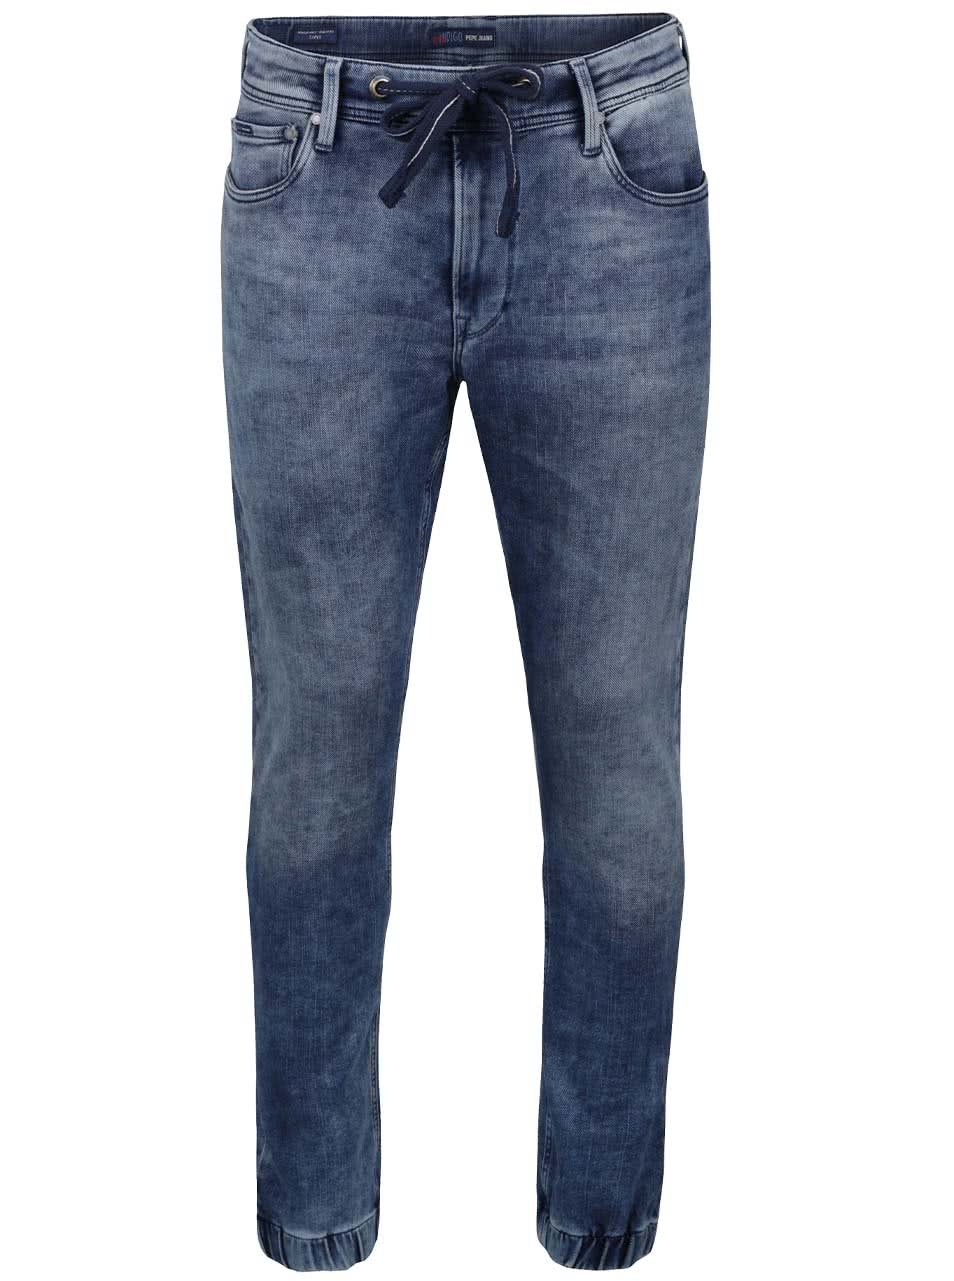 Modré pánské džíny se stahovací šňůrkou v pase Pepe Jeans Sprint